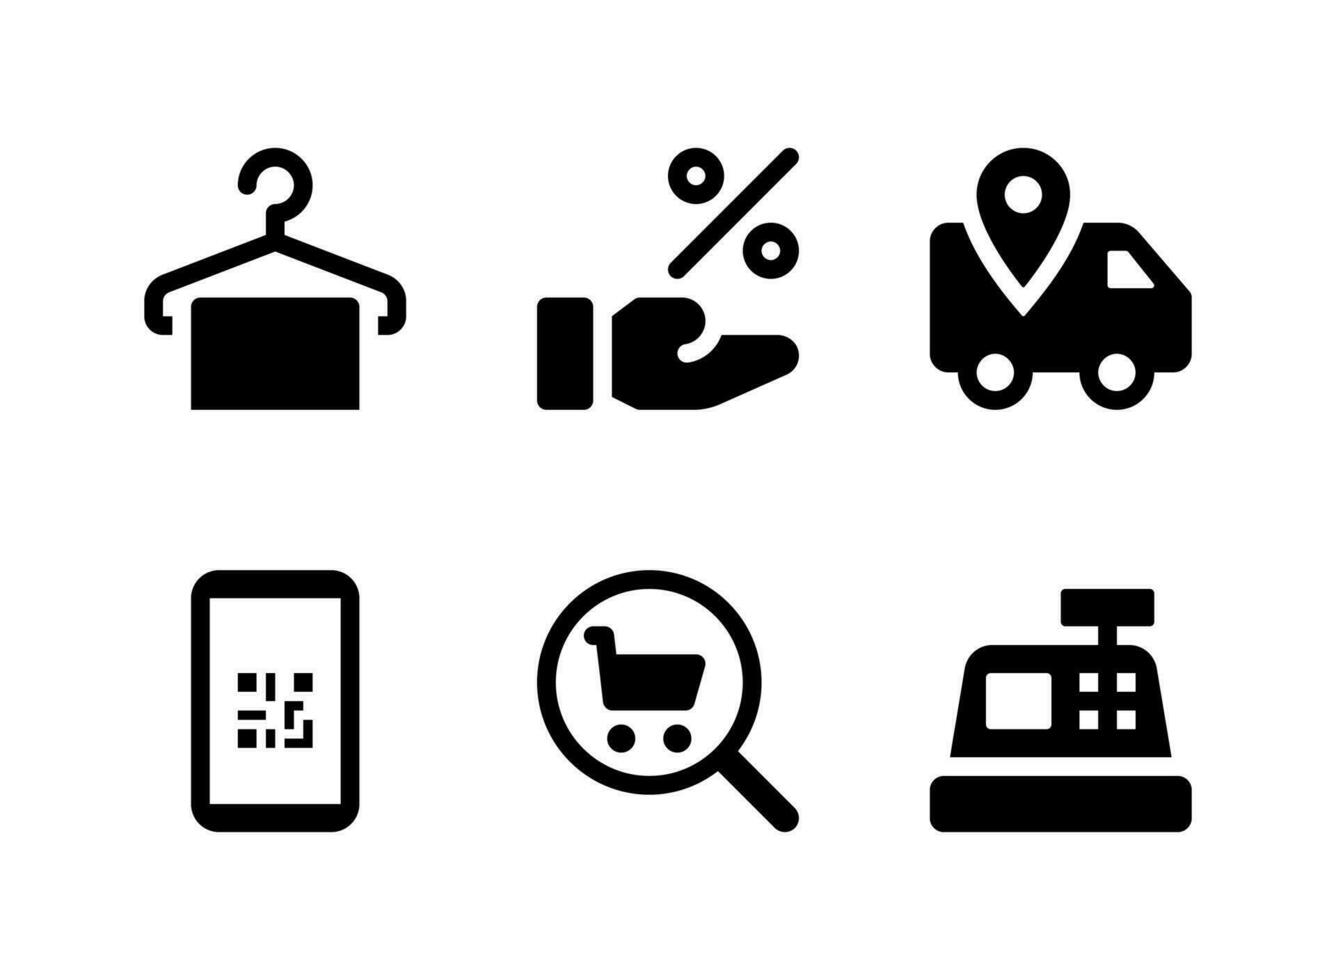 ensemble simple d'icônes solides vectorielles liées au commerce électronique. contient des icônes comme vêtements de suspension, offre une remise, une livraison, un téléphone, etc. vecteur